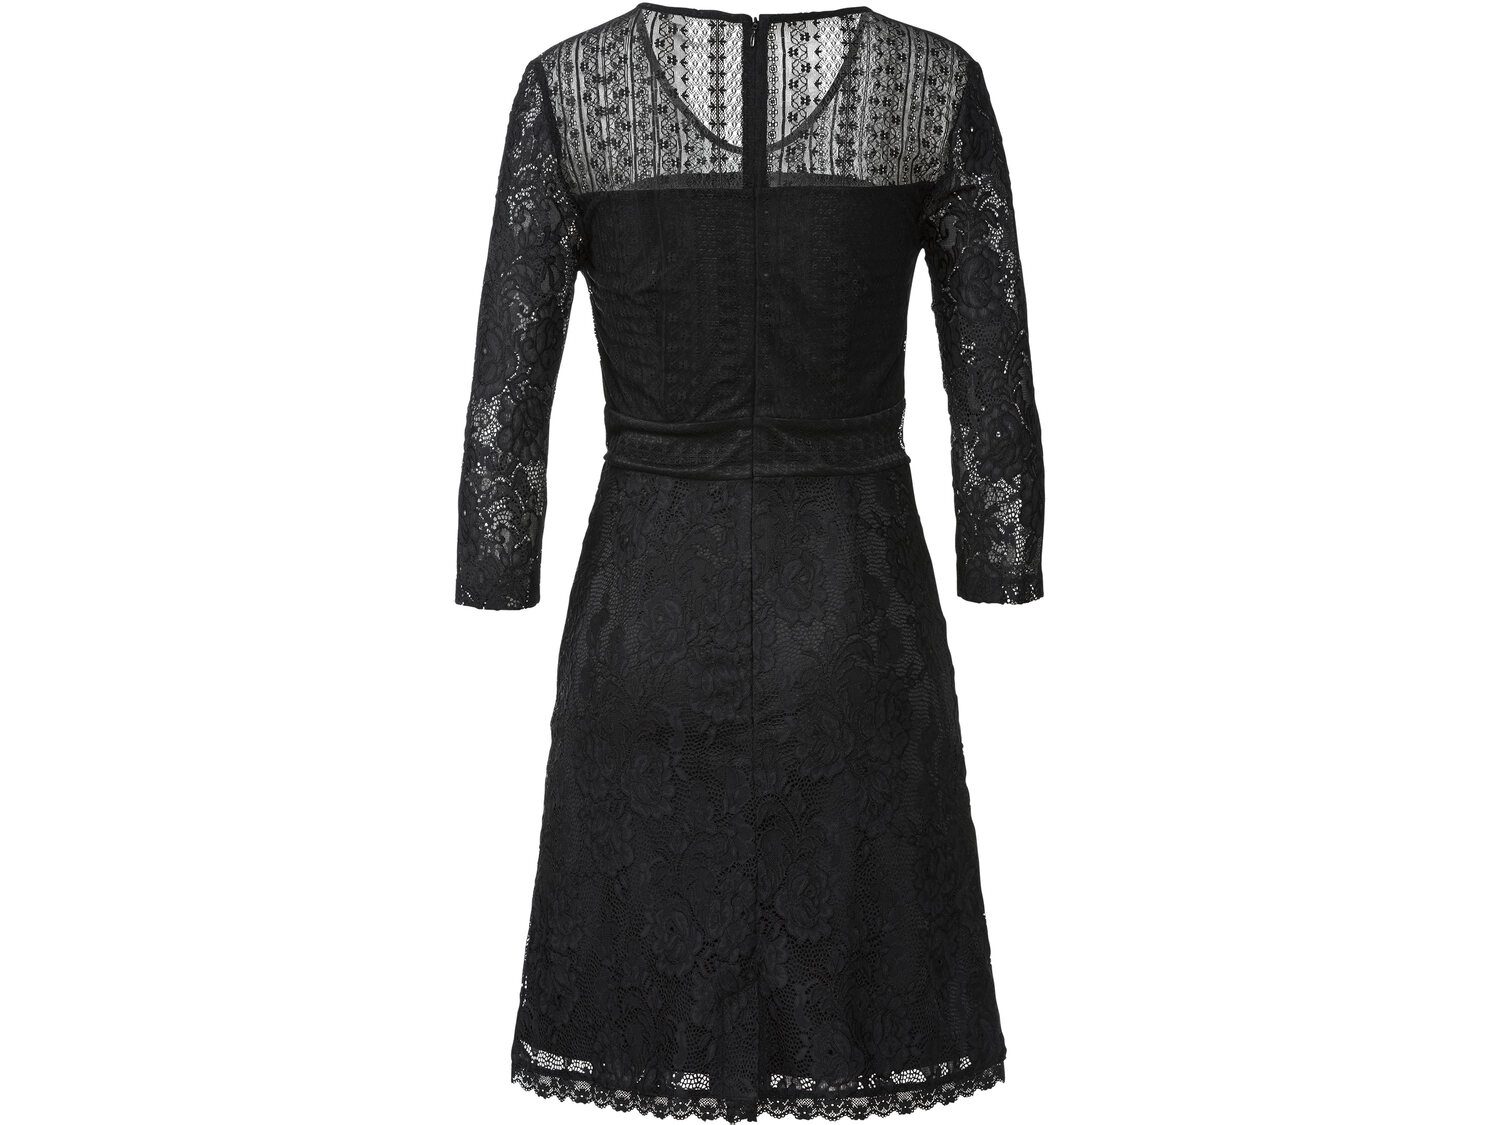 Sukienka koronkowa Esmara, cena 65,00 PLN 
- zmysłowa dzięki eleganckiej koronce
- ...